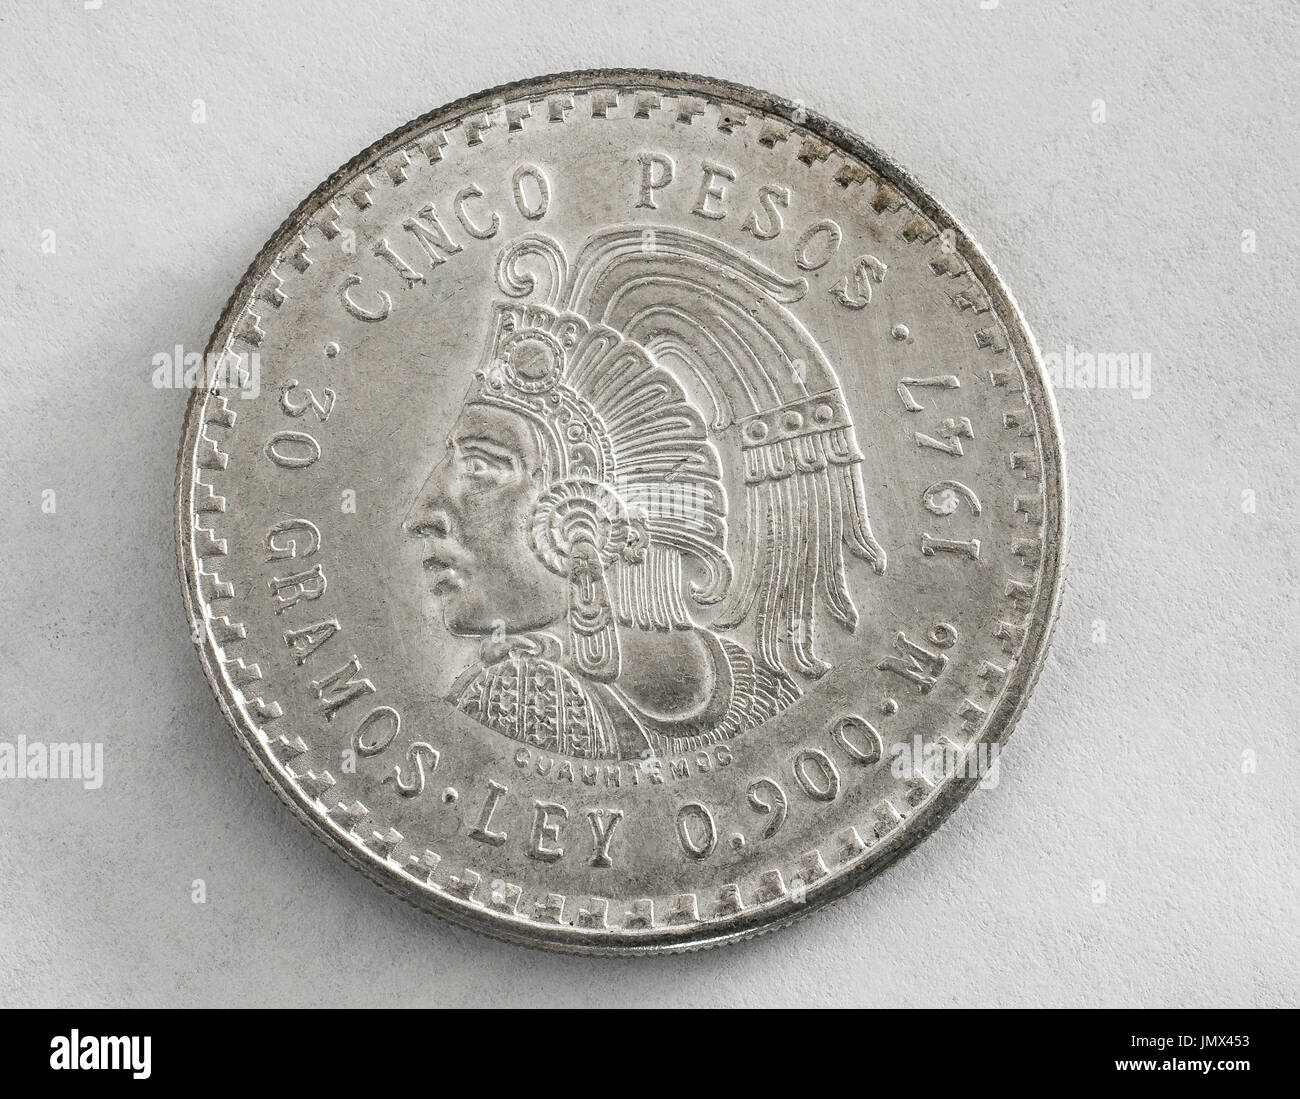 Cinq pesos Hidalgo mexicain Cuauhtemoc pièce en argent. Banque D'Images